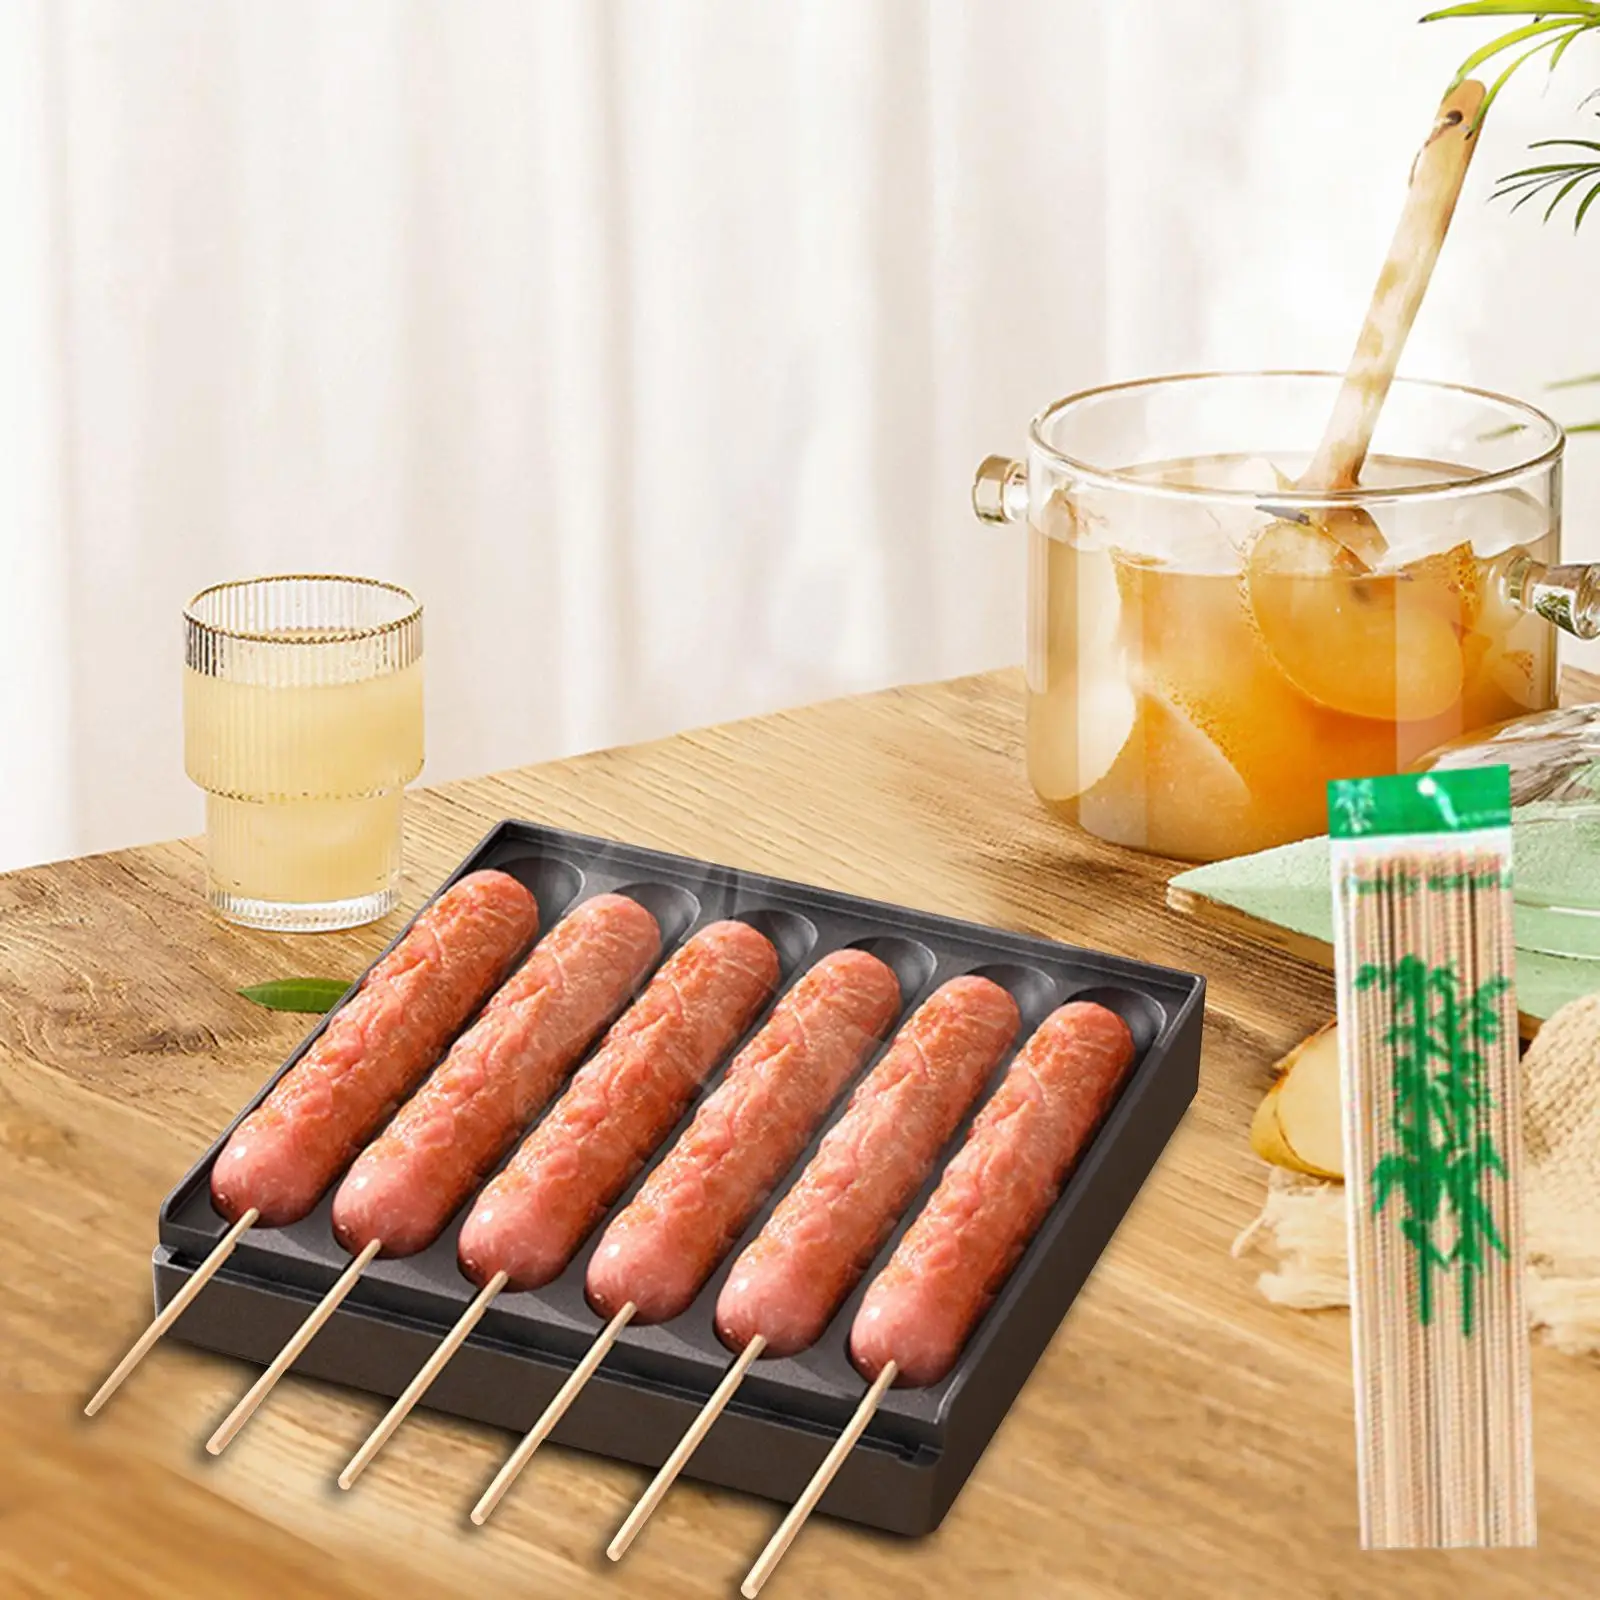 Sausage Grill Snacks Maker Nonstick DIY Hot Dog Presser Maker Corn Dog Making Aluminum for Breakfast Kitchen Cooking Outdoor